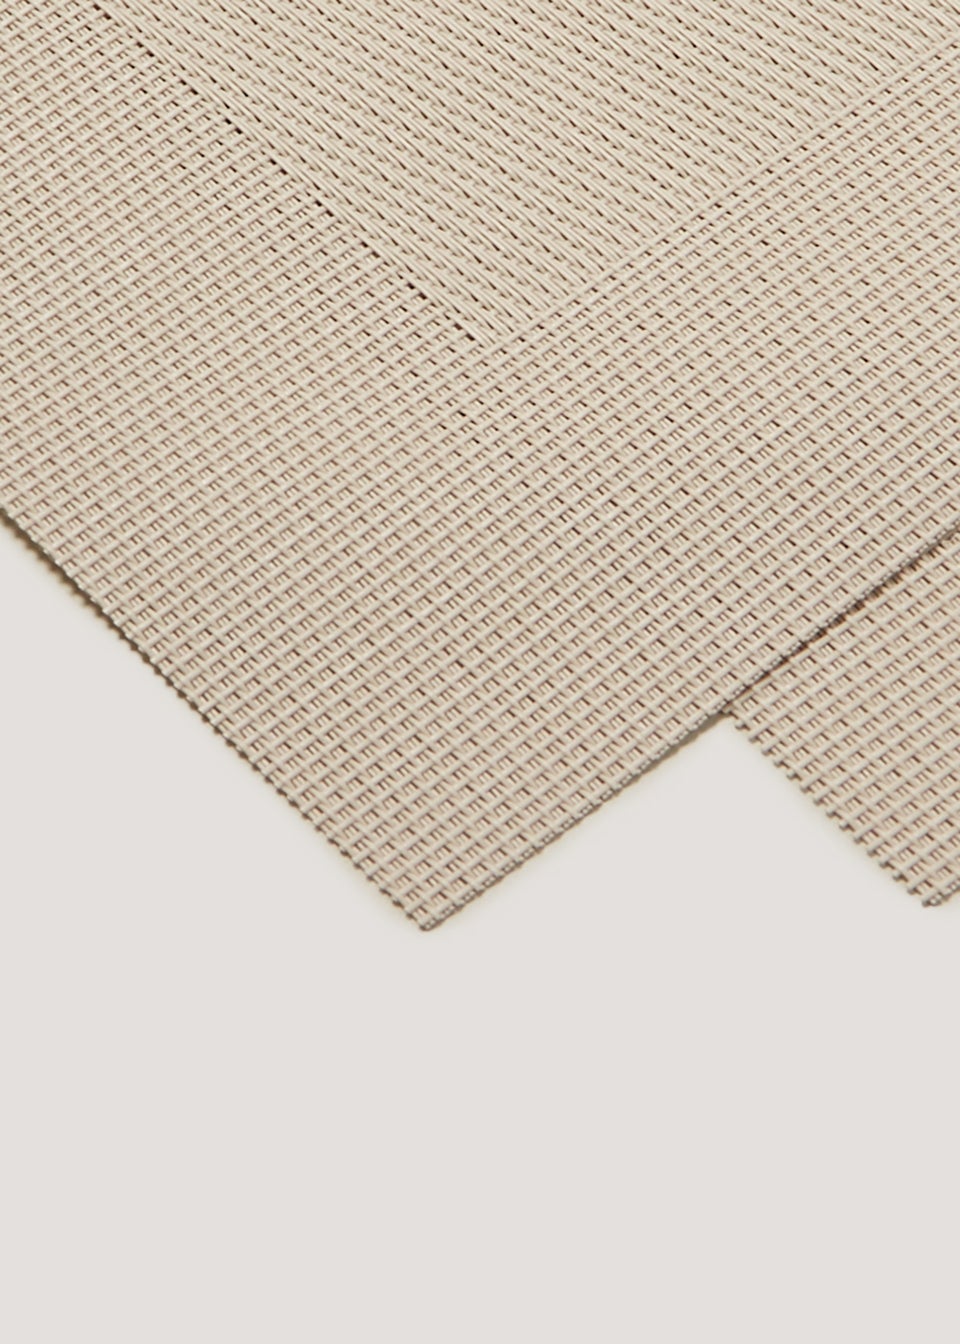 2 Pack Natural Woven PVC Placemats (45cm x 30cm)